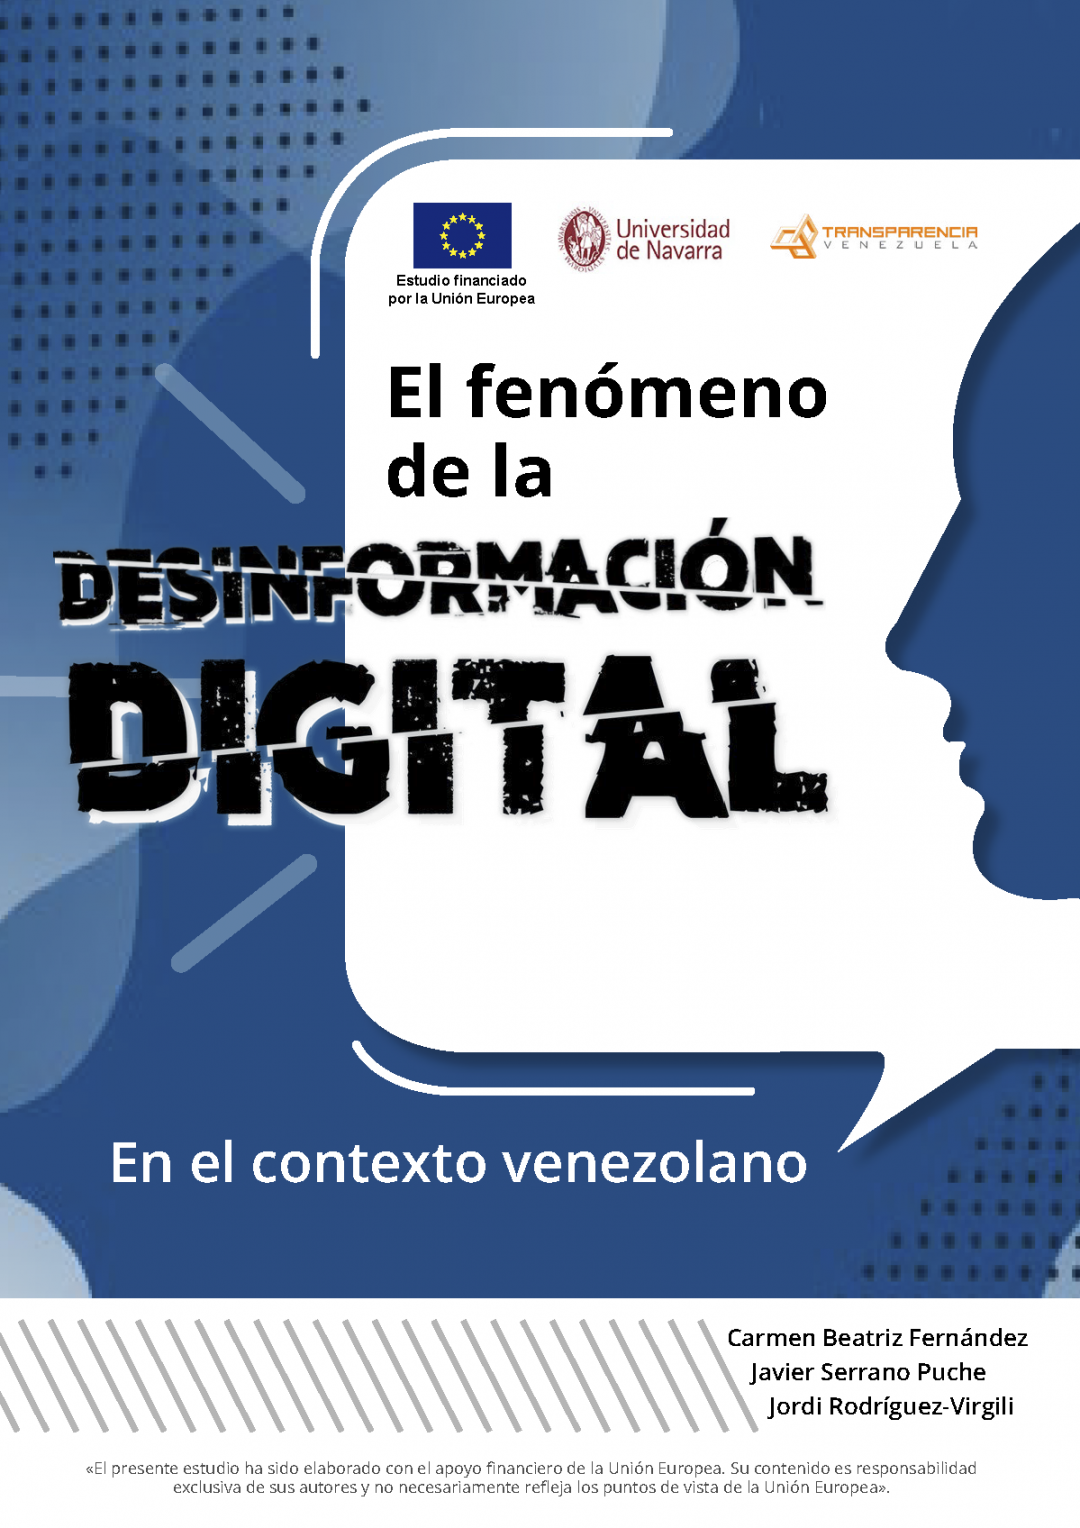 El fenómeno de la desinformación digital en el contexto venezolano